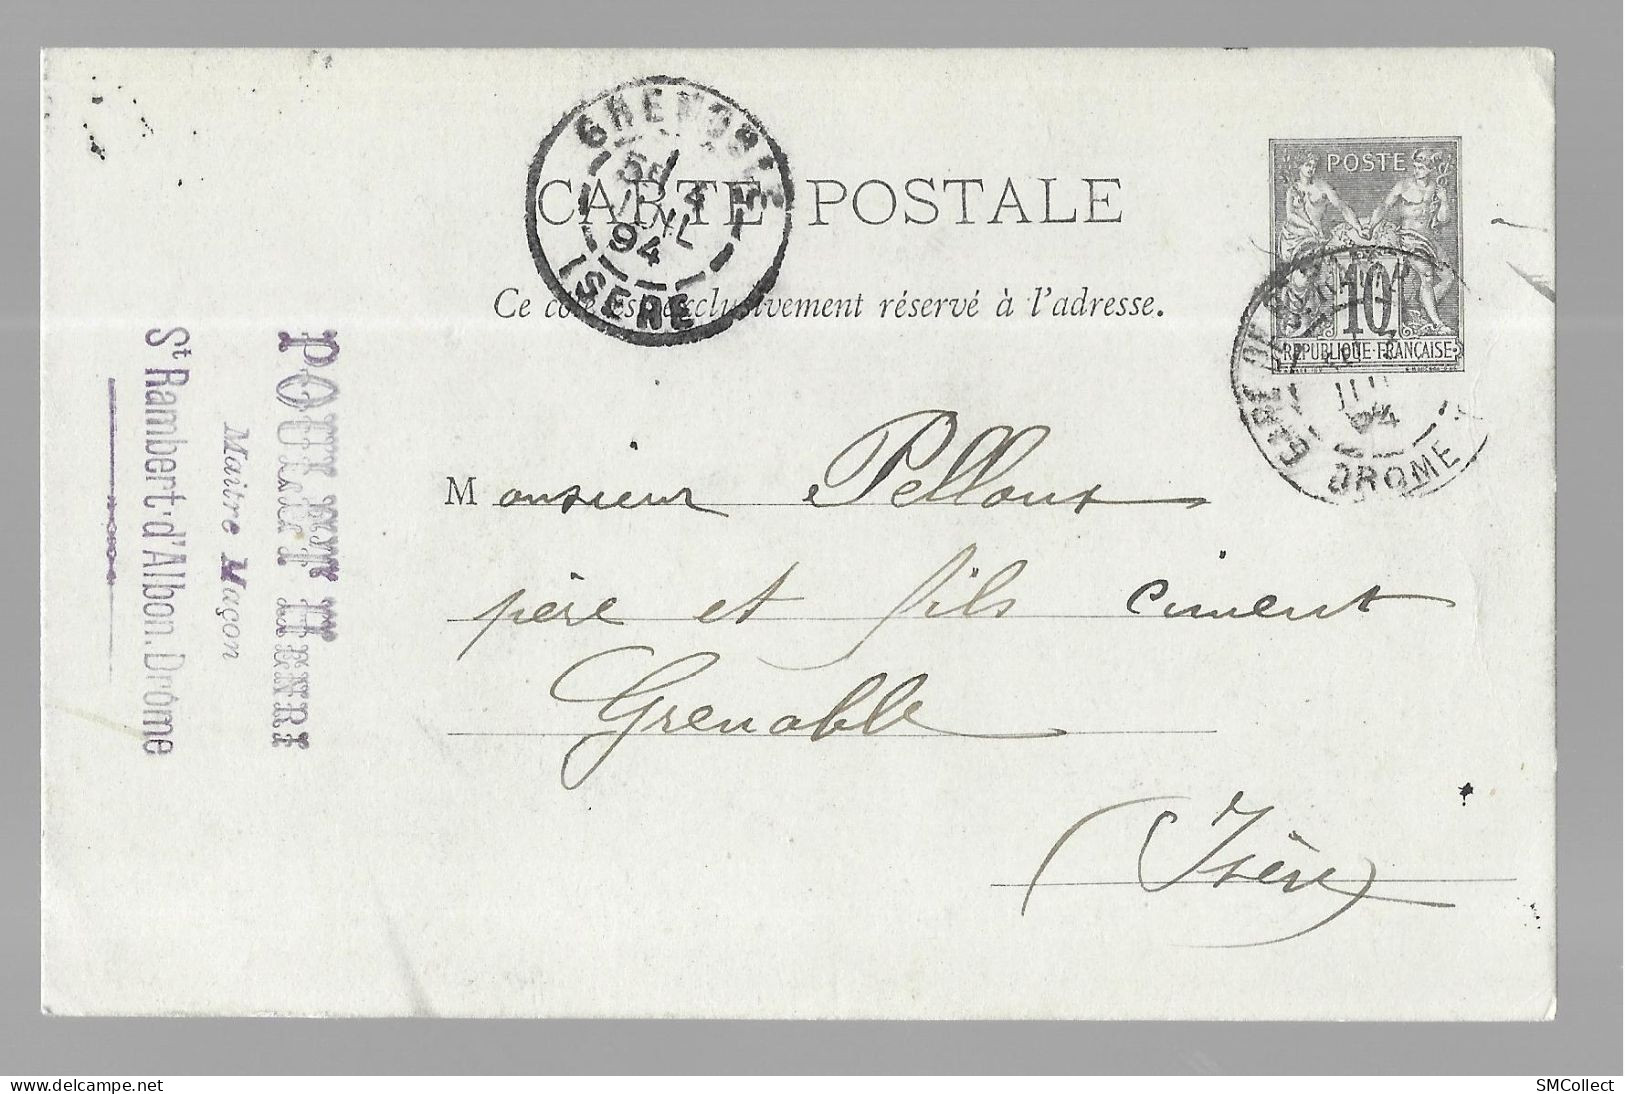 Entier Postal, Sage 10 Centimes Noir Voyagé En Juillet 1894, De Saint Rambert D'Albon Gare Vers Grenoble (13573) - Standaardpostkaarten En TSC (Voor 1995)